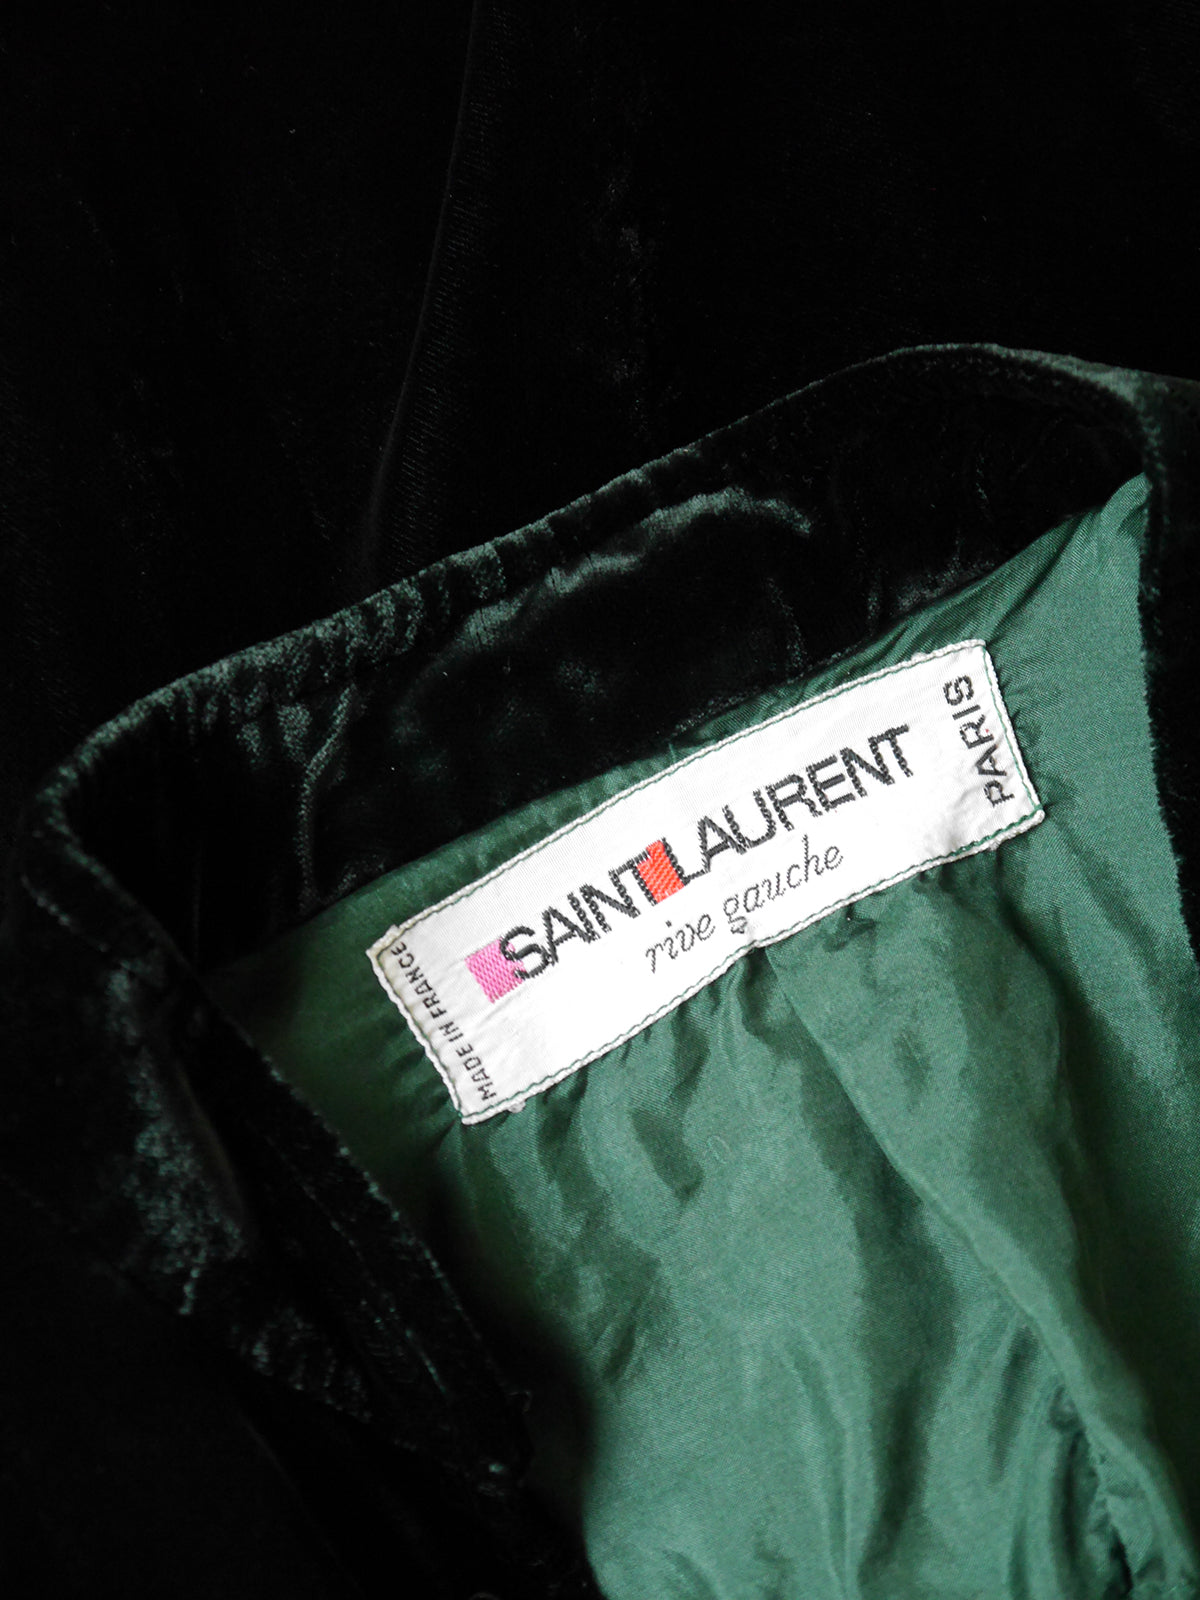 YVES SAINT LAURENT c. 1969 Vintage Panne Velvet Safari Suit Lace-Up Top & Pants